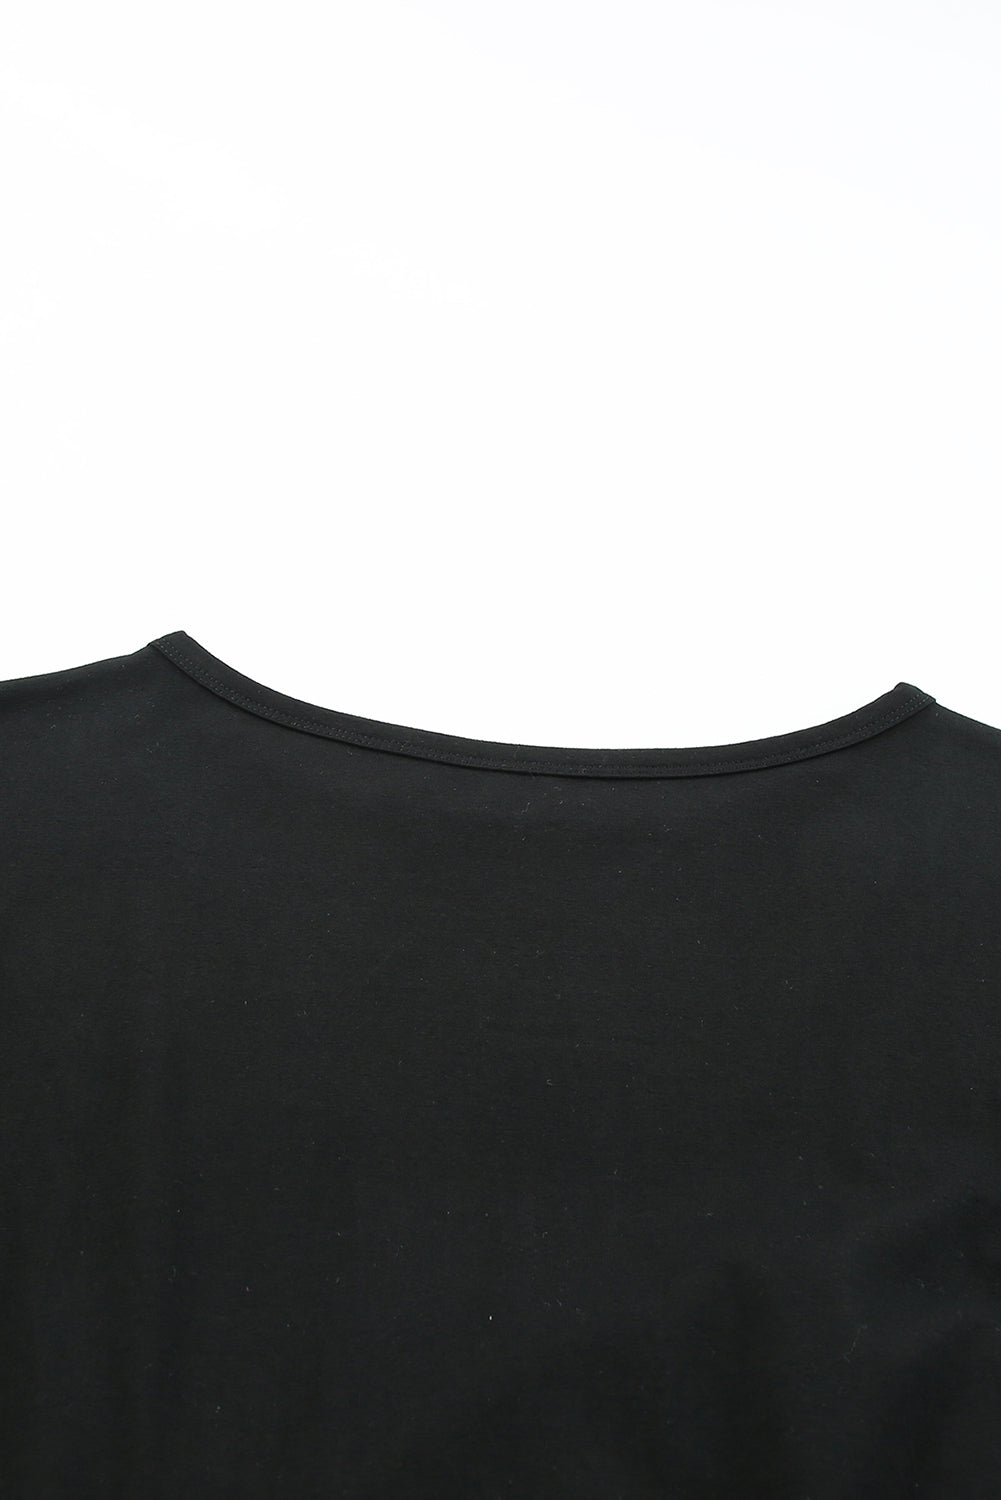 Schwarzes, figurbetontes, lockeres T-Shirt-Minikleid mit Brusttasche und Rüschen